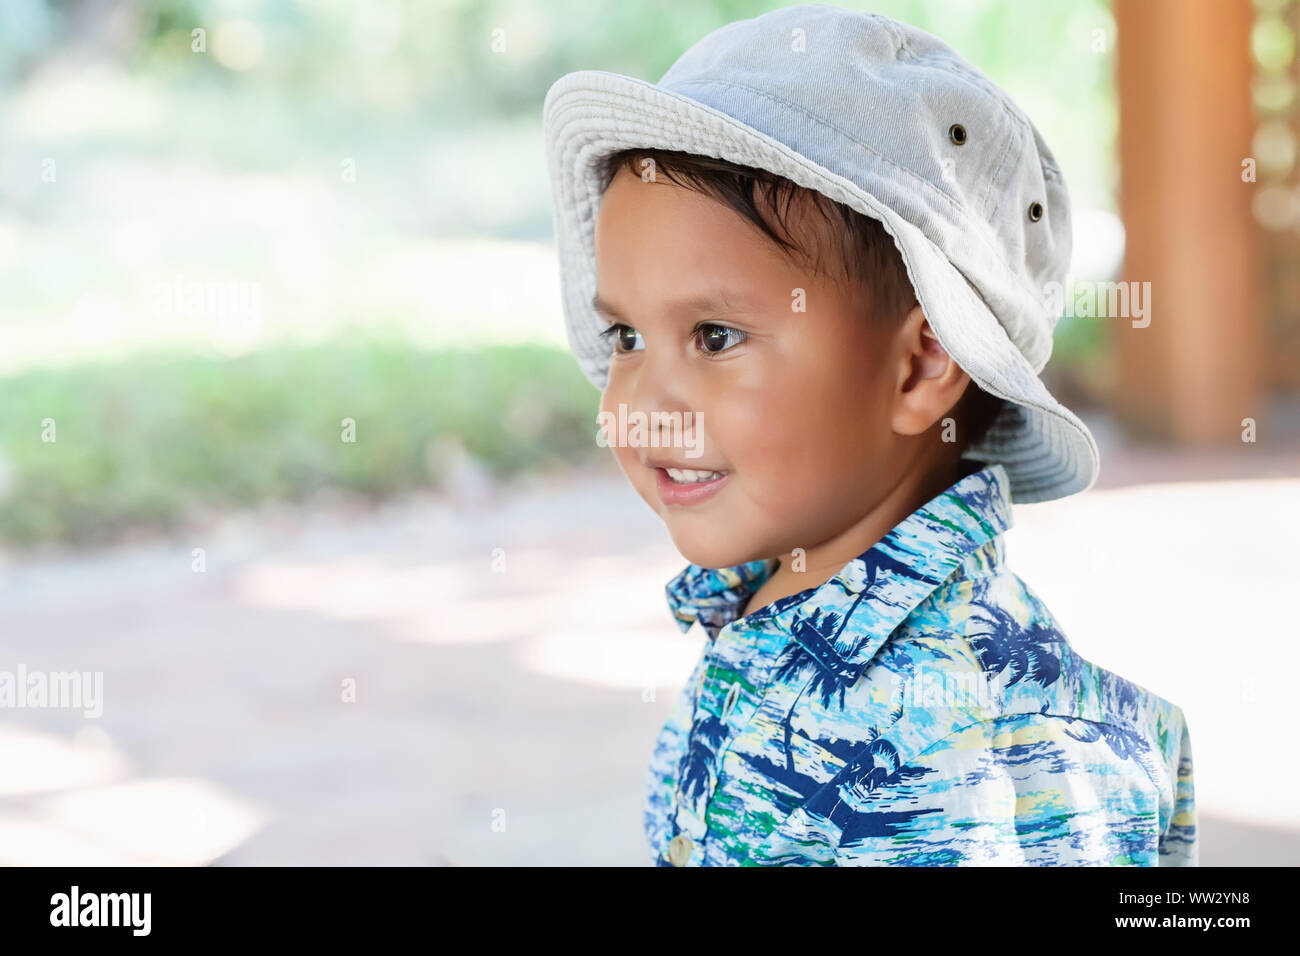 Un chiquillo; 3 año de edad, vistiendo un sombrero y una camiseta de impresión hawaiano, mirando en la distancia con una linda sonrisa en la cara. Foto de stock